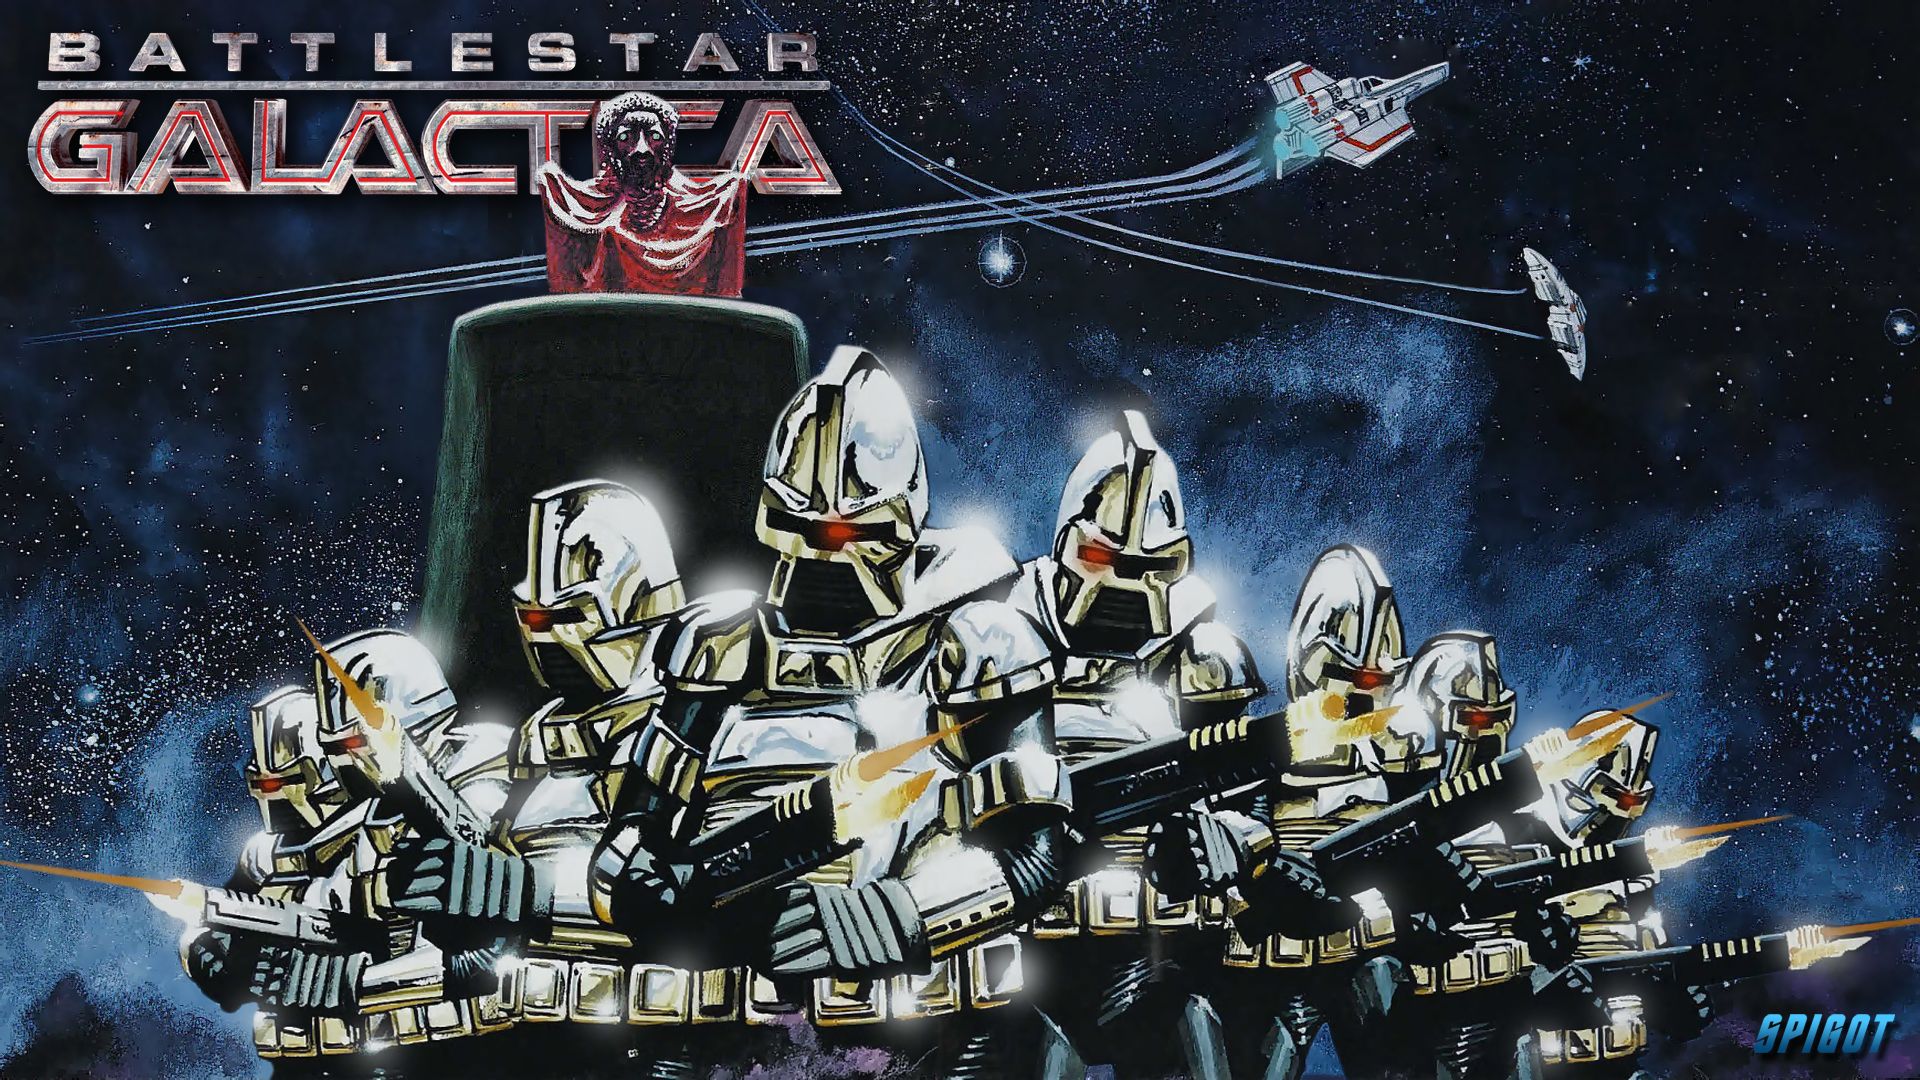 Classic Battlestar Galactica Wallpaper